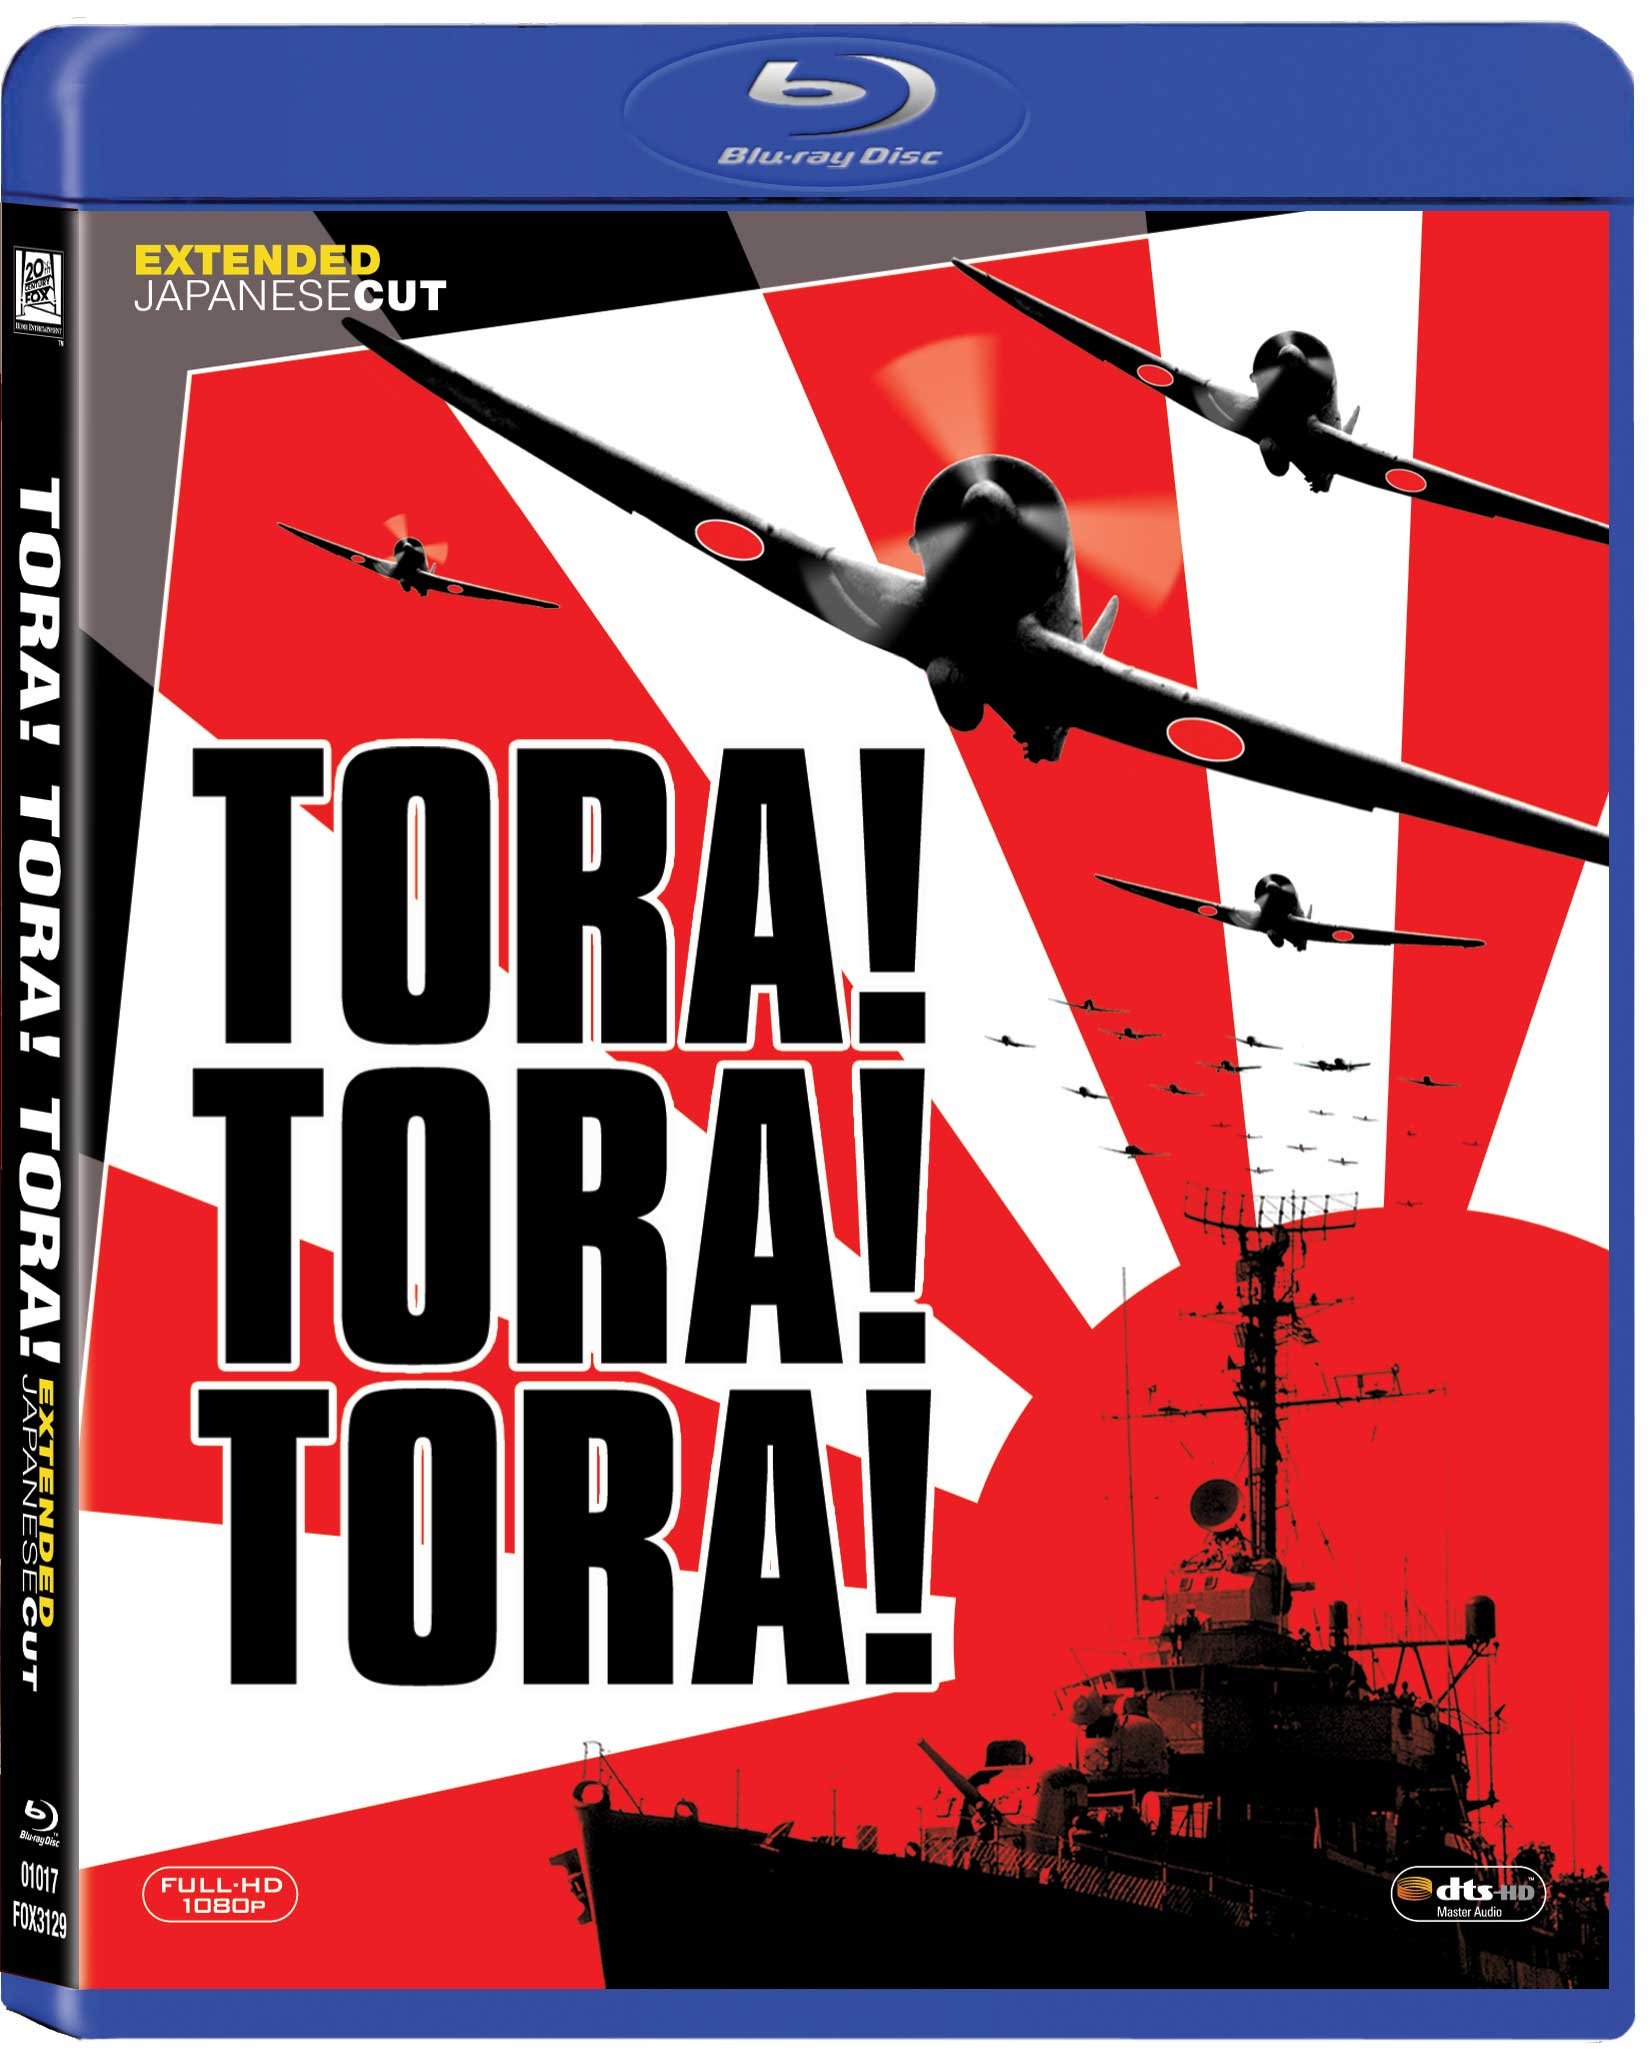 tora-tora-tora-movie-purchase-or-watch-online